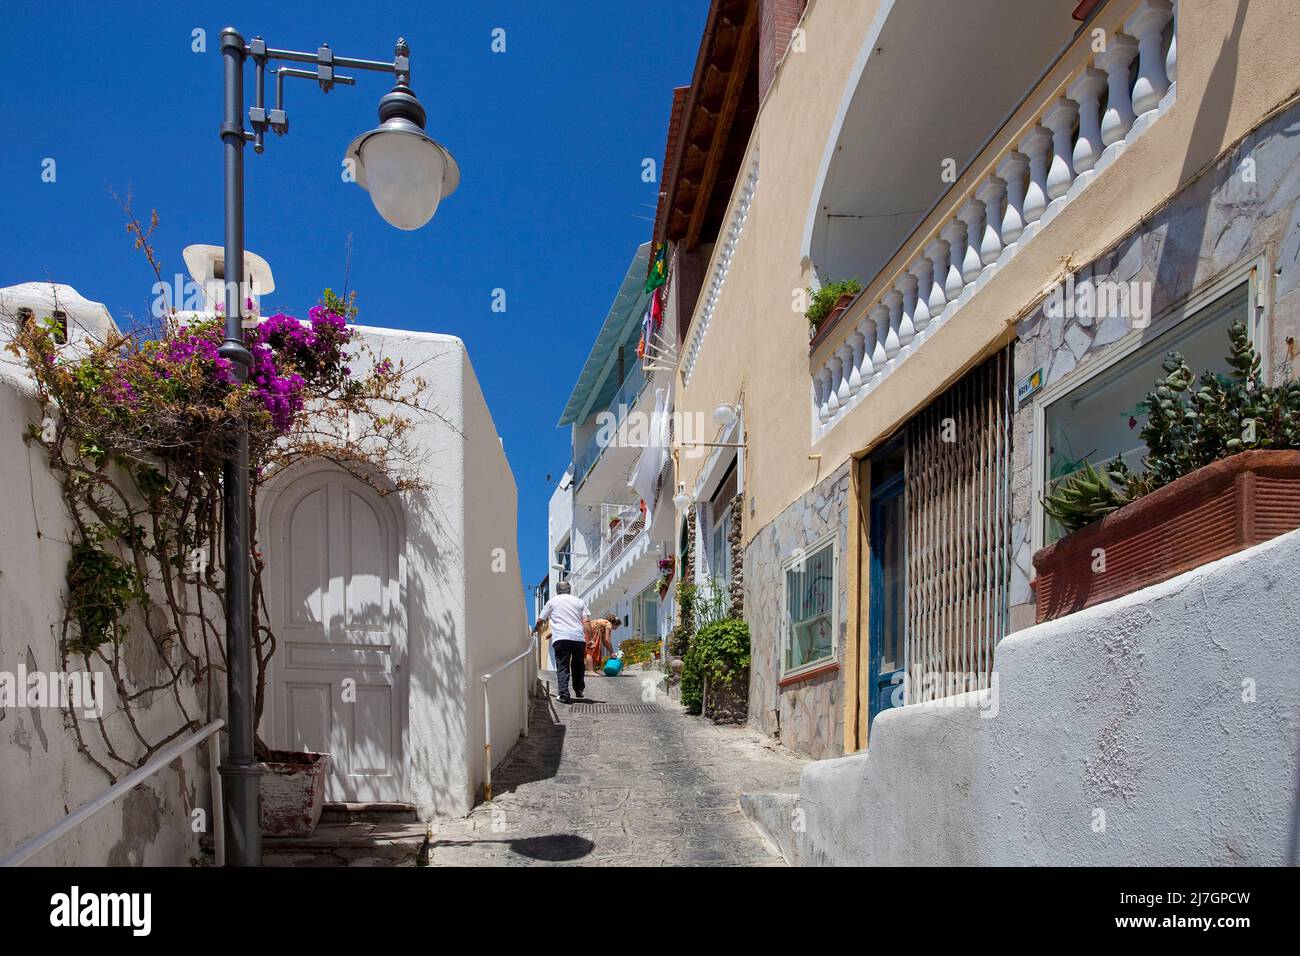 Vicolo nel pittoresco villaggio di pescatori Sant' Angelo, isola d'Ischia, Golfo di Neapel, Italia, Mar Mediterraneo, Europa Foto Stock